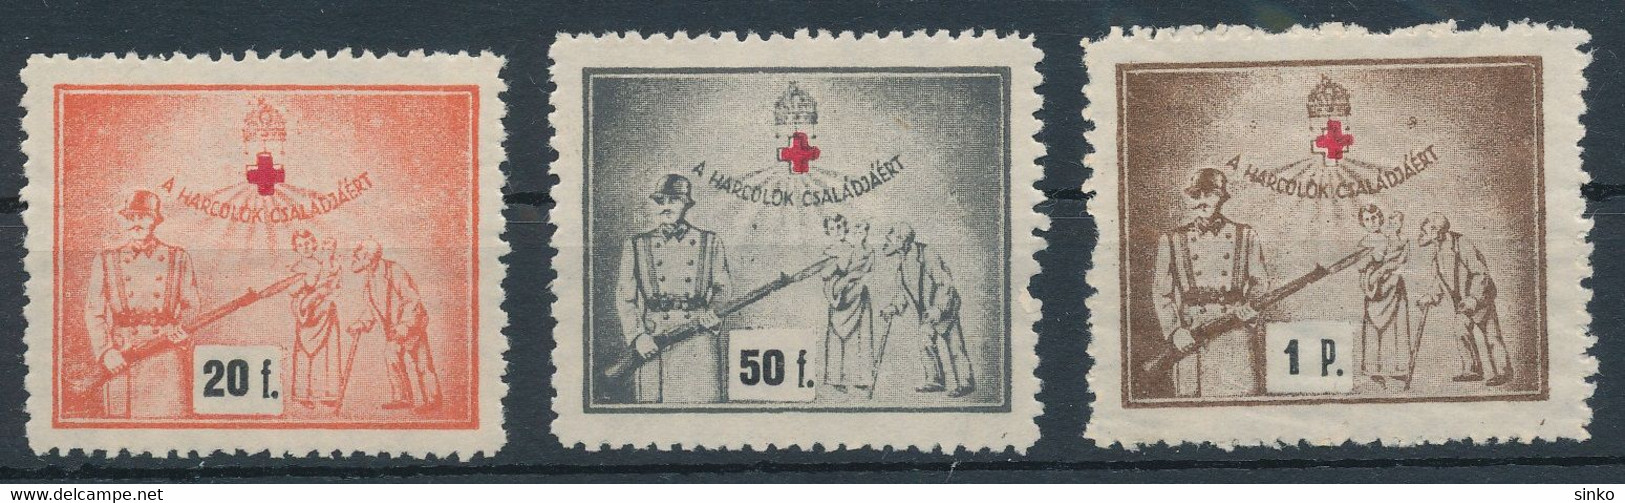 1940s Aid Stamps - Feuillets Souvenir